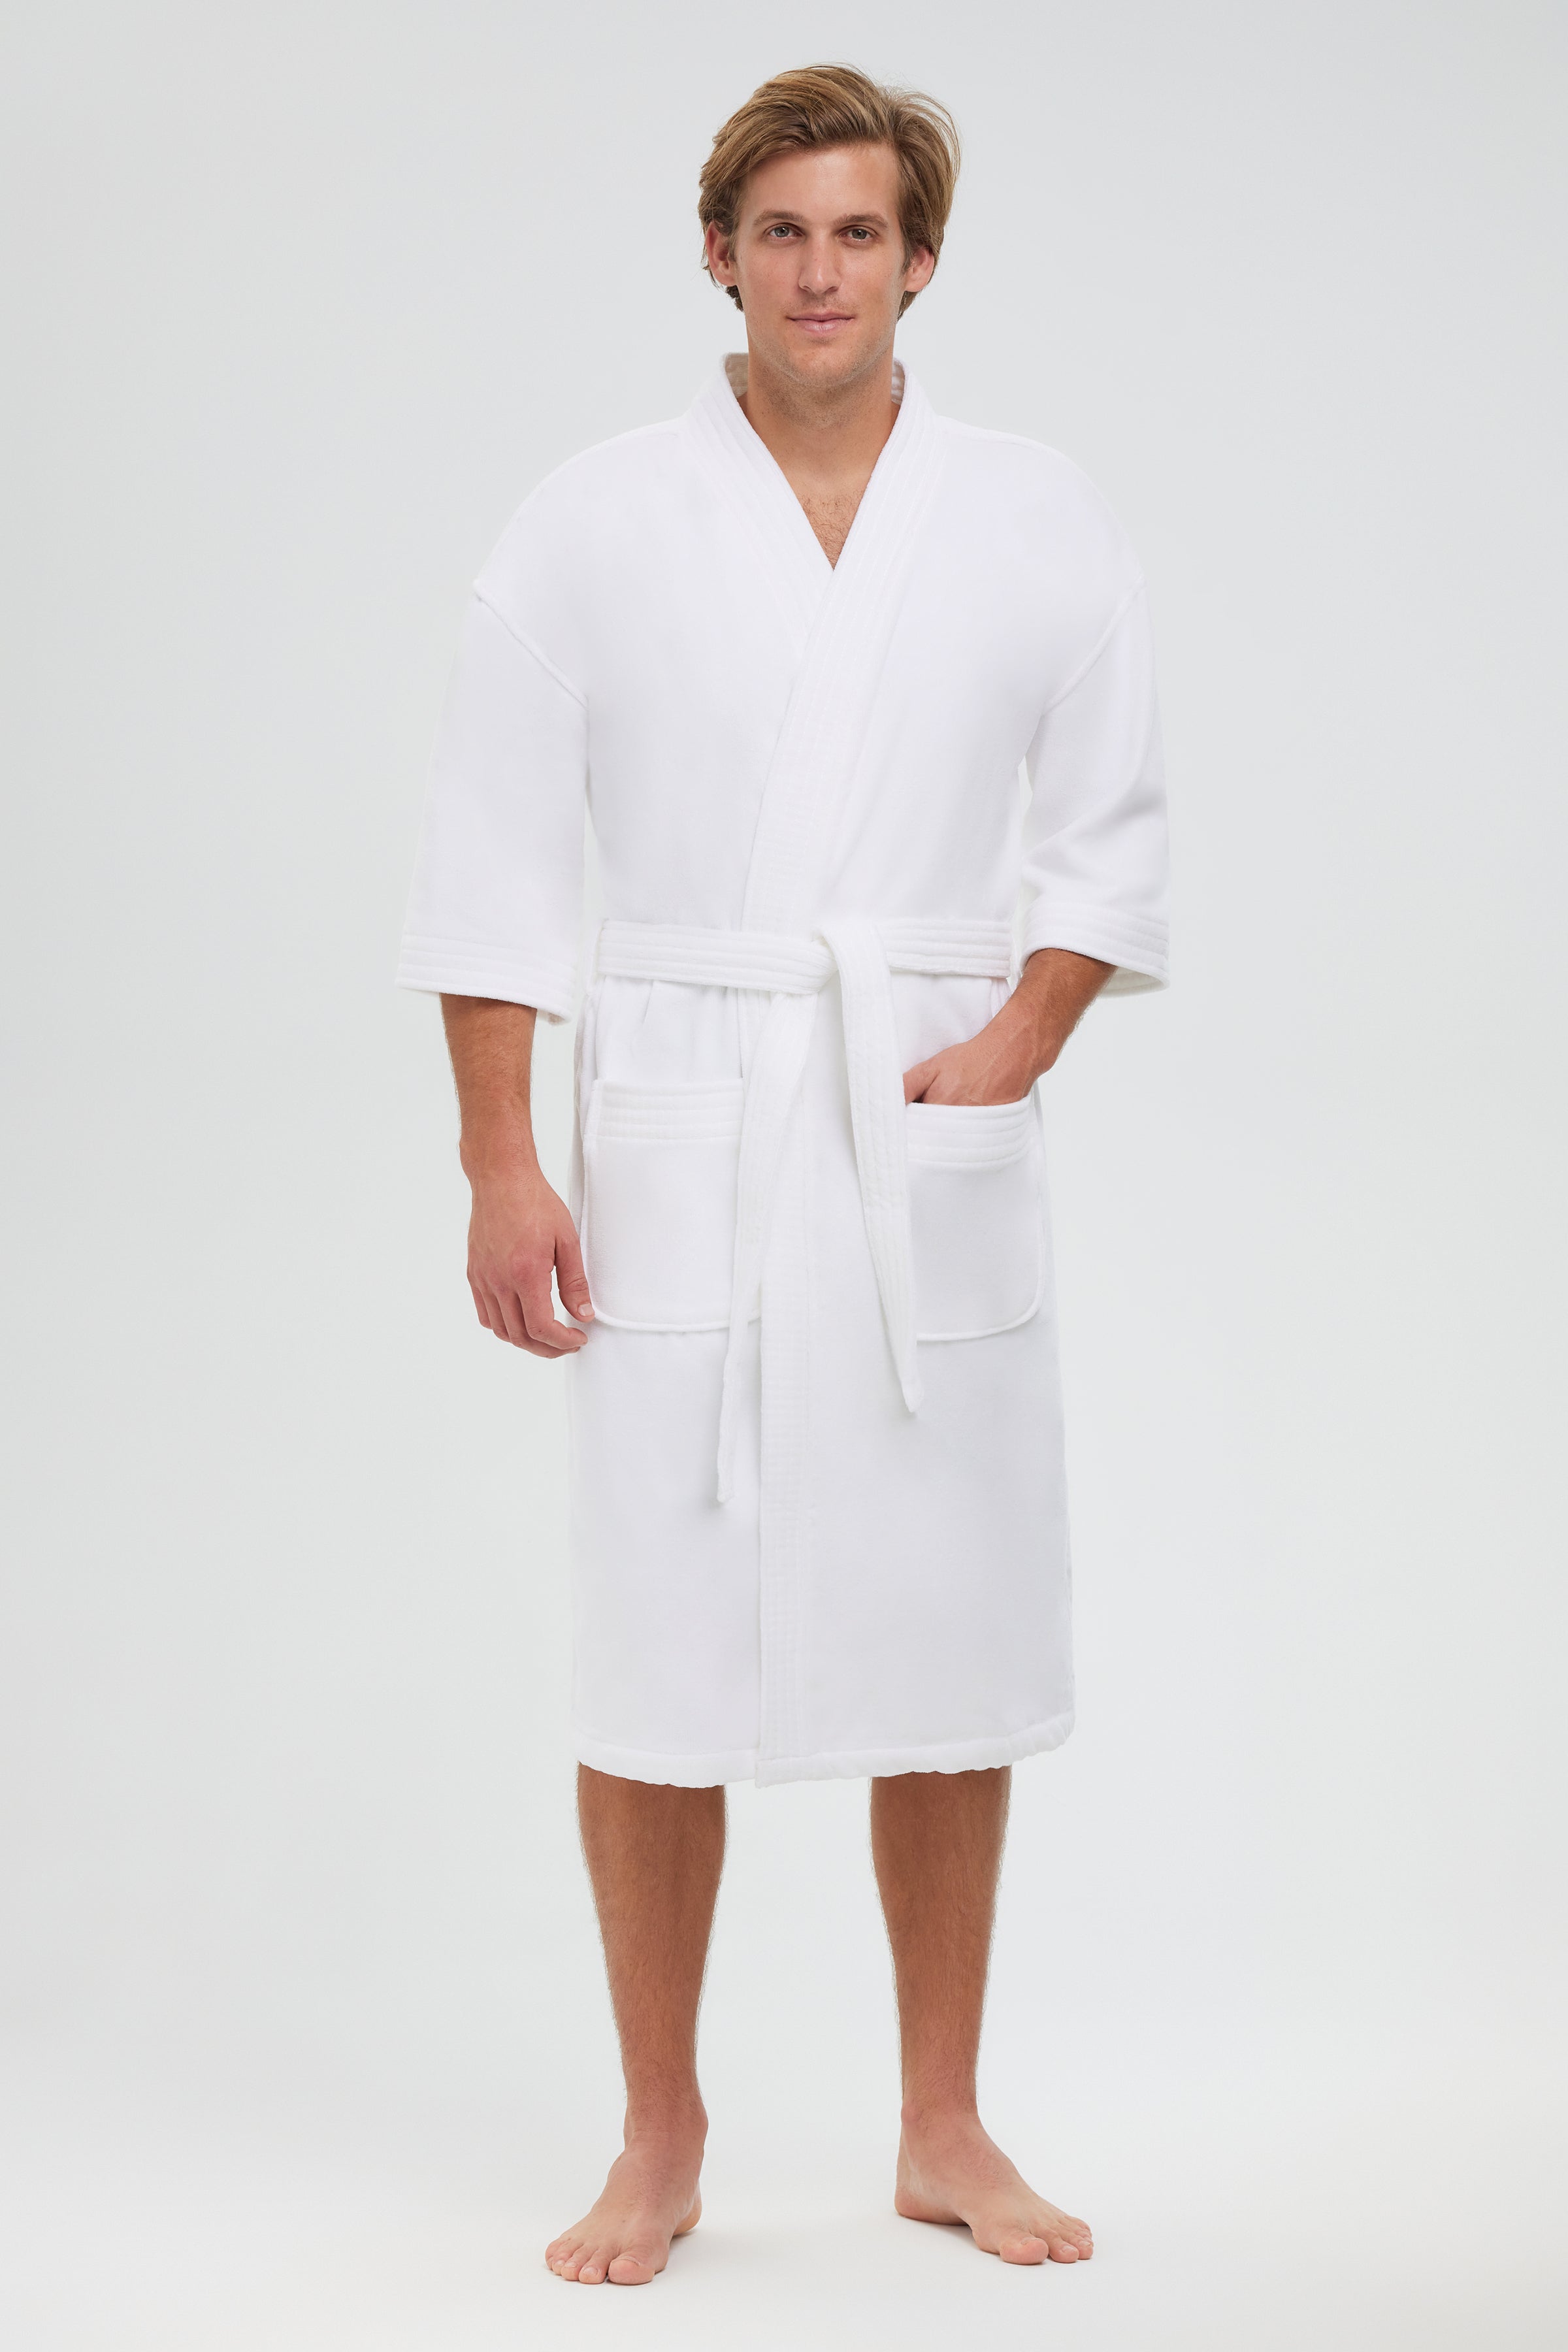 12oz. Luxury Velour Terry Kimono Robe, 2x Large / White - Monarch Cypress Online